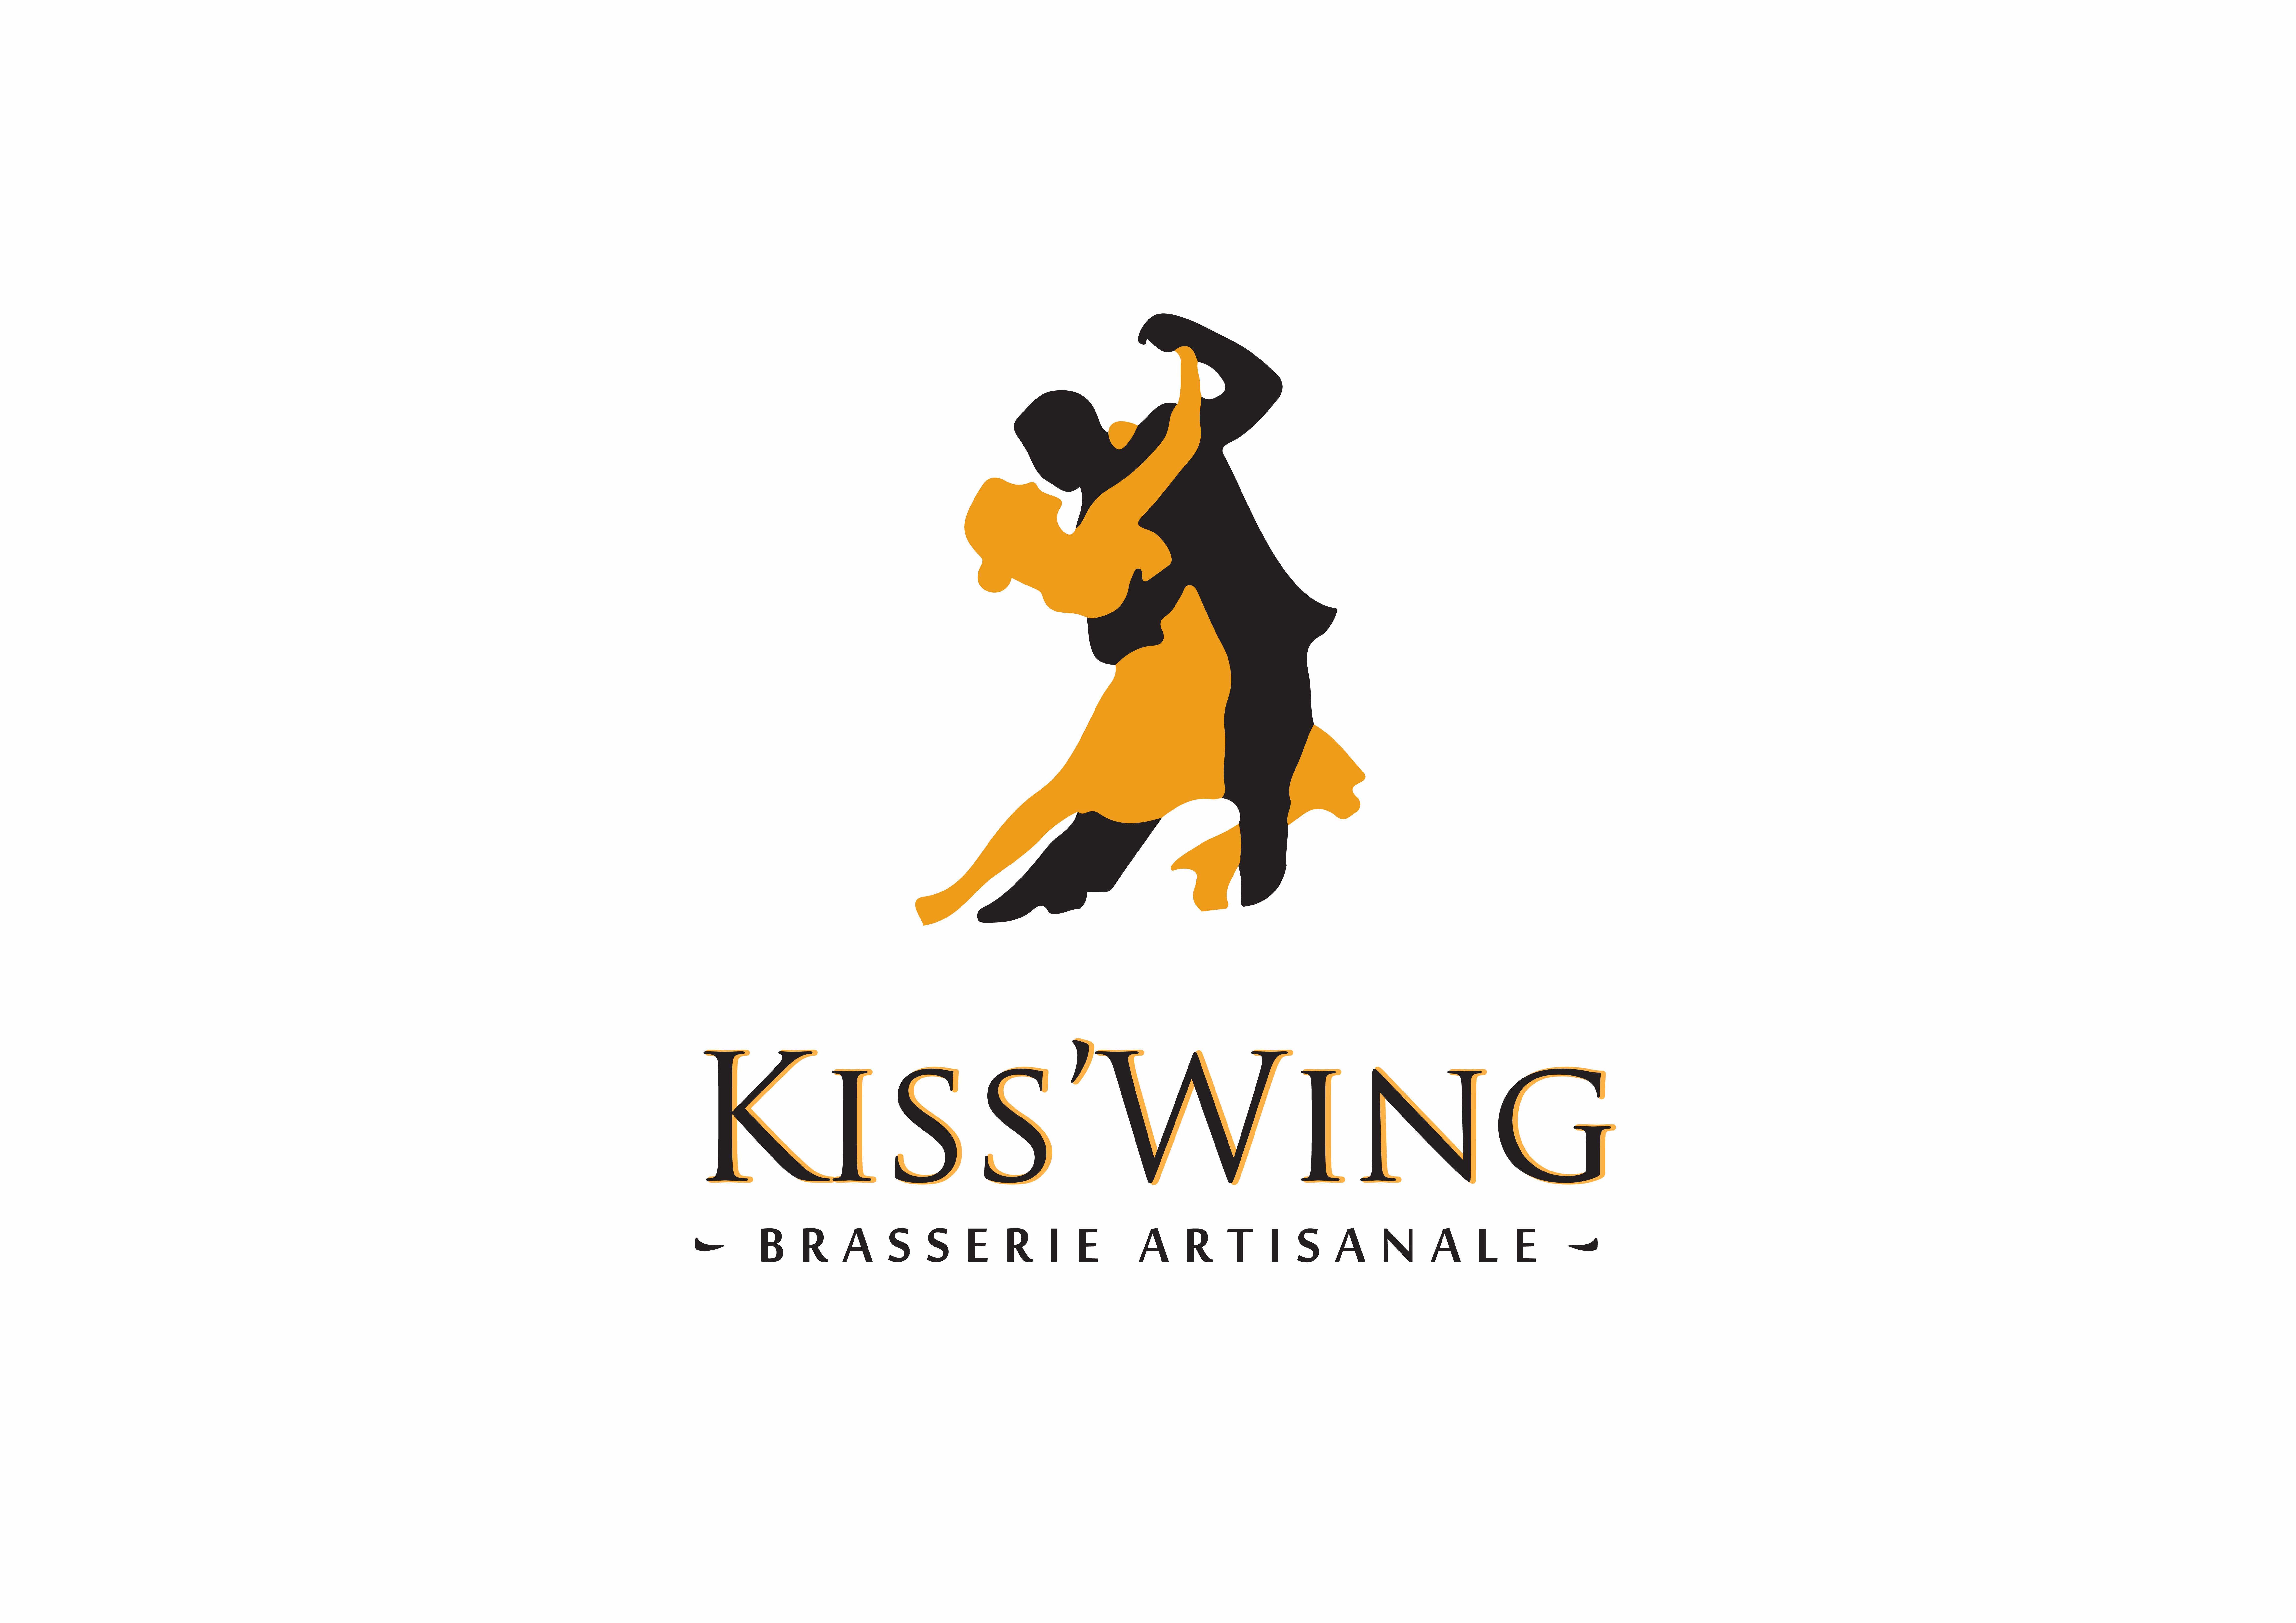 Brasserie Kiss wing